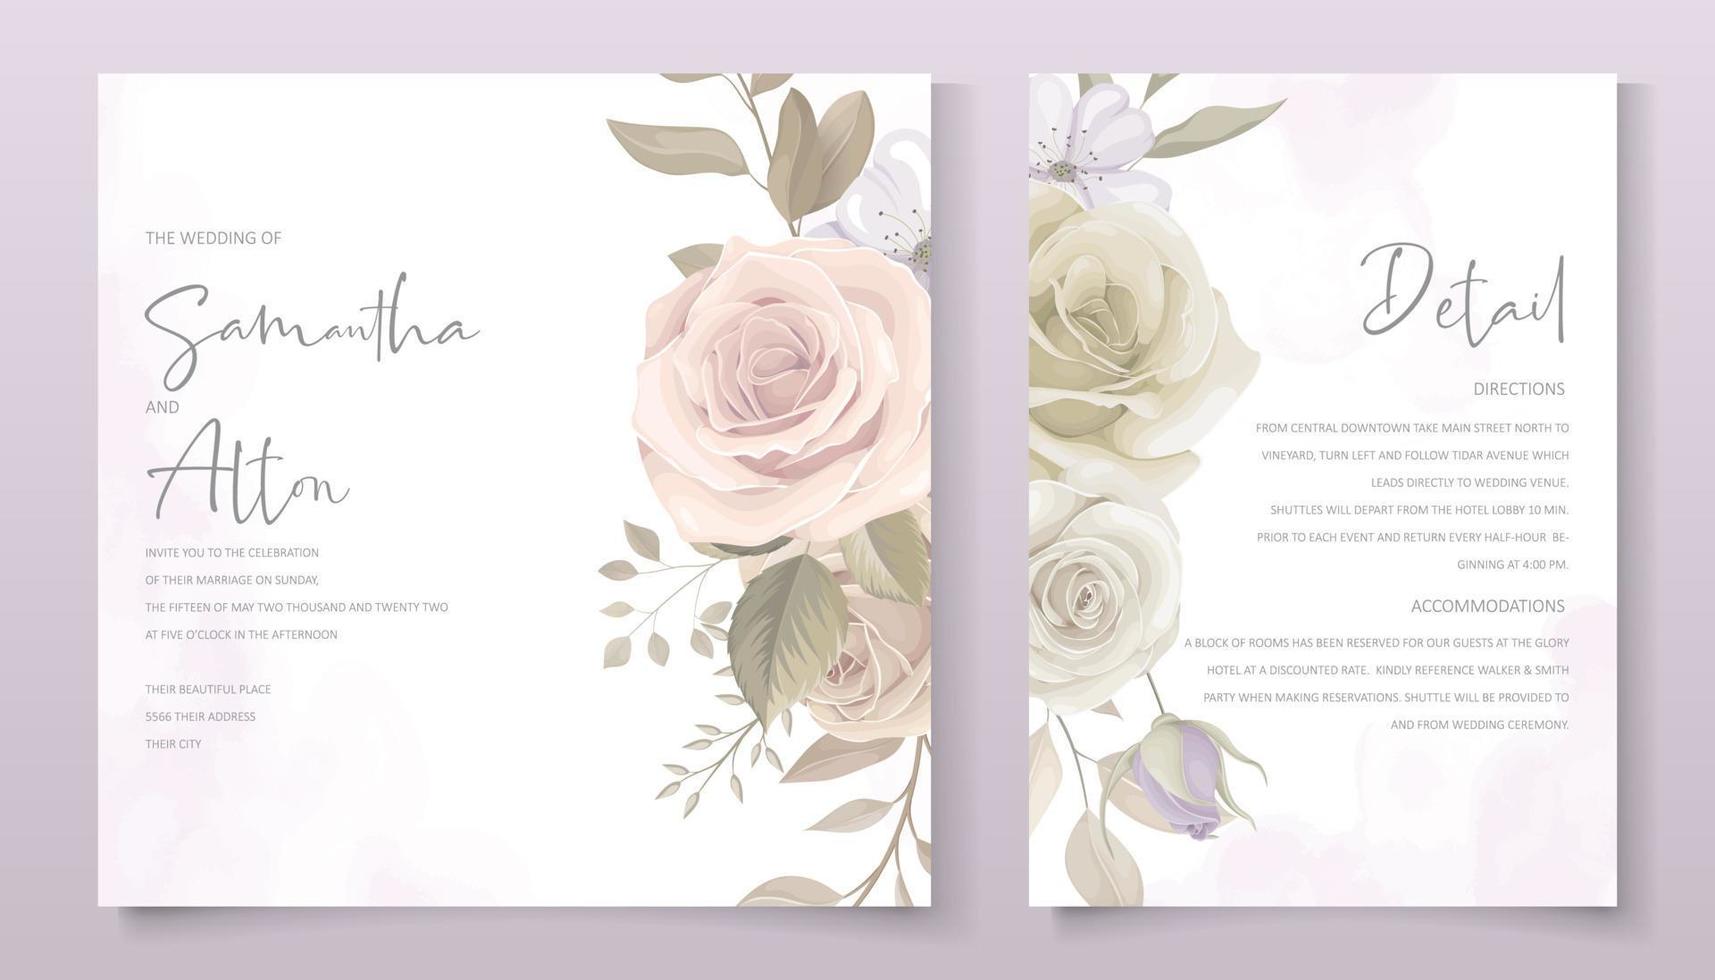 modèle de carte d'invitation de mariage avec motif floral vecteur